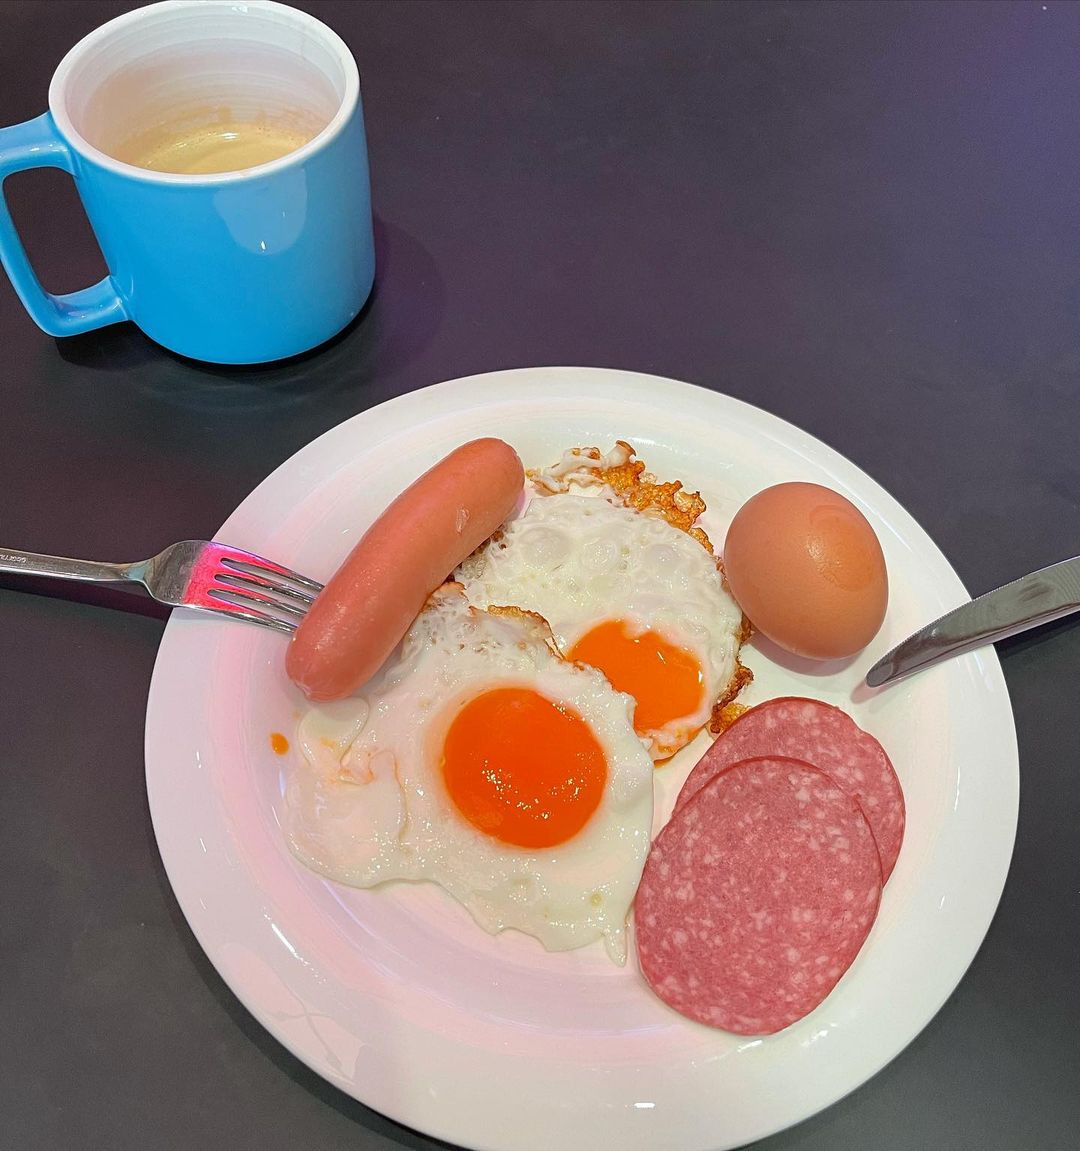 "Завтрак холостяка": Константин Богомолов показал, что ест по утрам